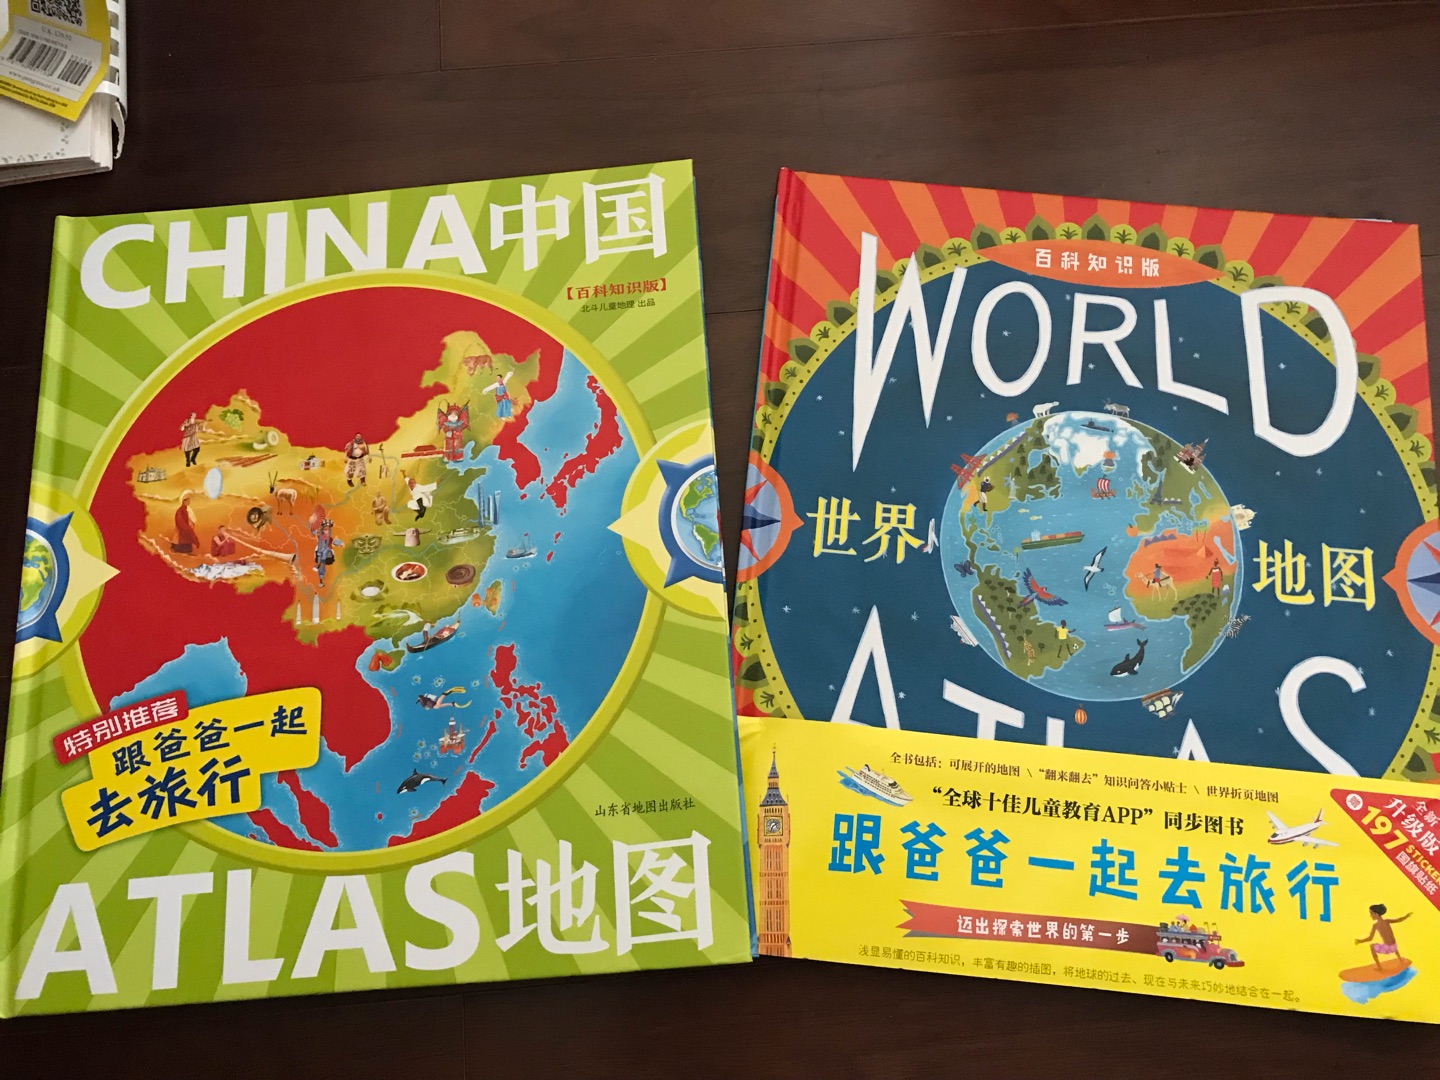 一本很出名的世界的书，介绍了世界各种内容，还有国旗贴纸和一张地图，很不错